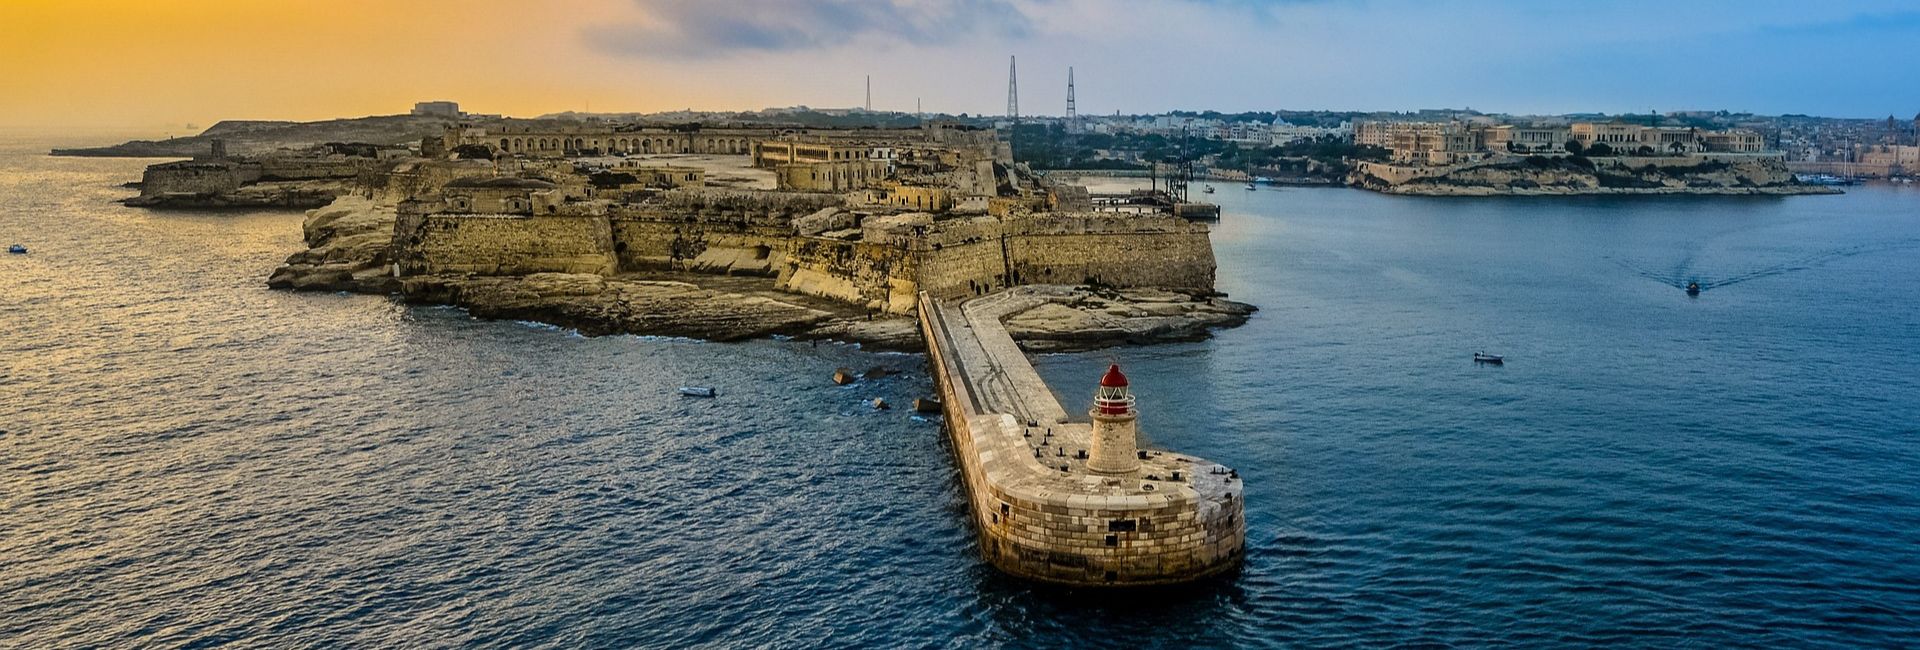 Fin de semana en Malta